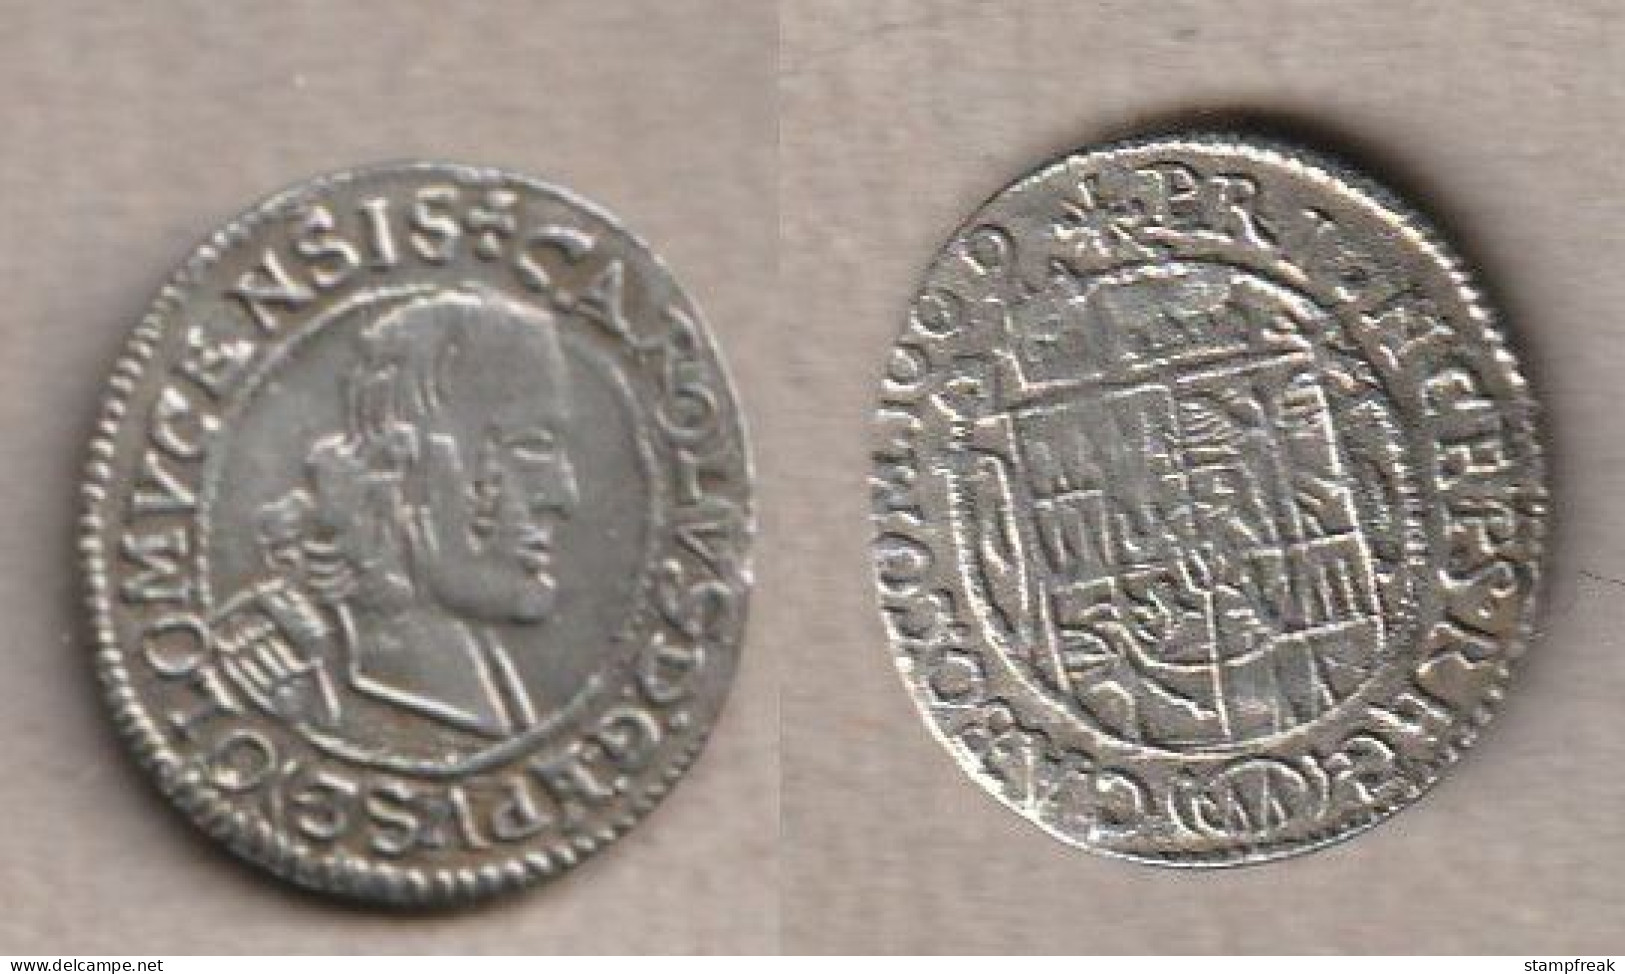 6767) RDR, Bistum Olmütz, 3 Kreuzer 1669 - Tschechische Rep.